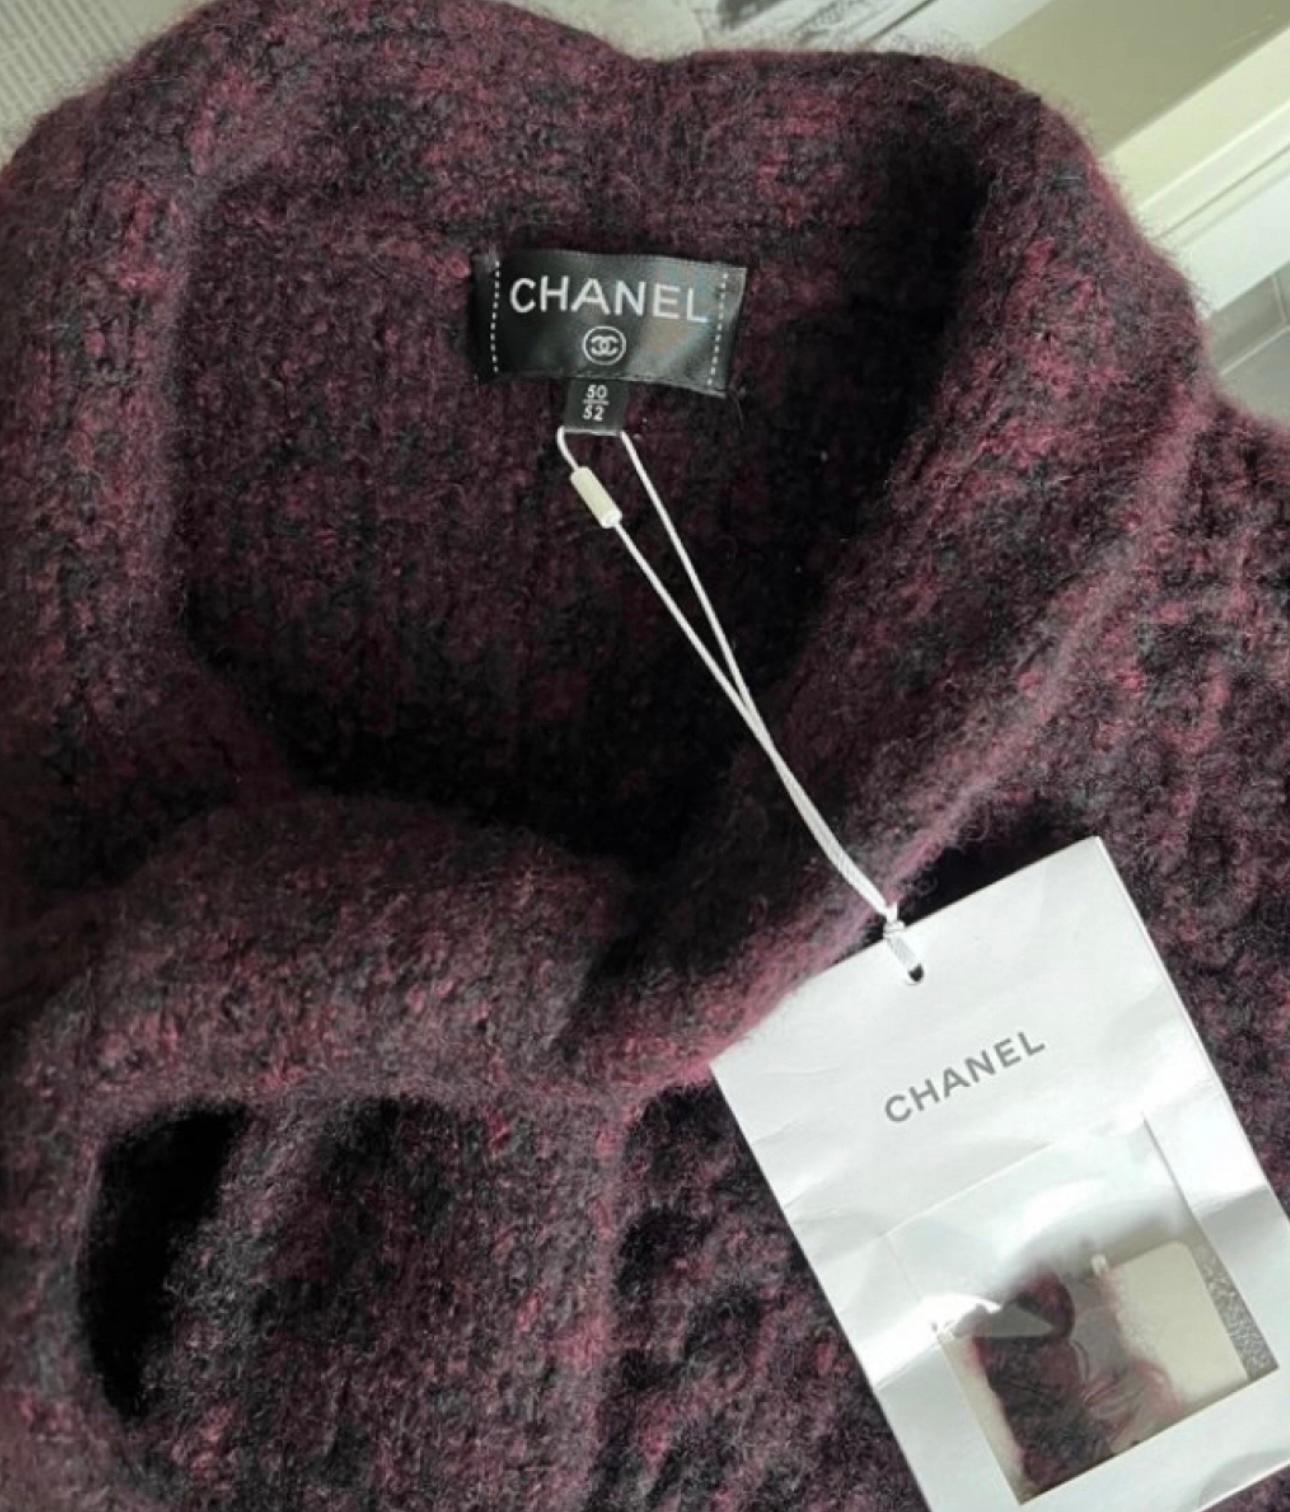 Neue atemberaubende Chanel Jacke aus Kaschmir und Seide Cape aus Paris / COSMOPOLITE 2017 Métiers d'Art Collection'S, 17A
- CC-Logo-Lucit-Knöpfe
Boutique-Preis um 6.000$
Größenbezeichnung 50/52 fr.